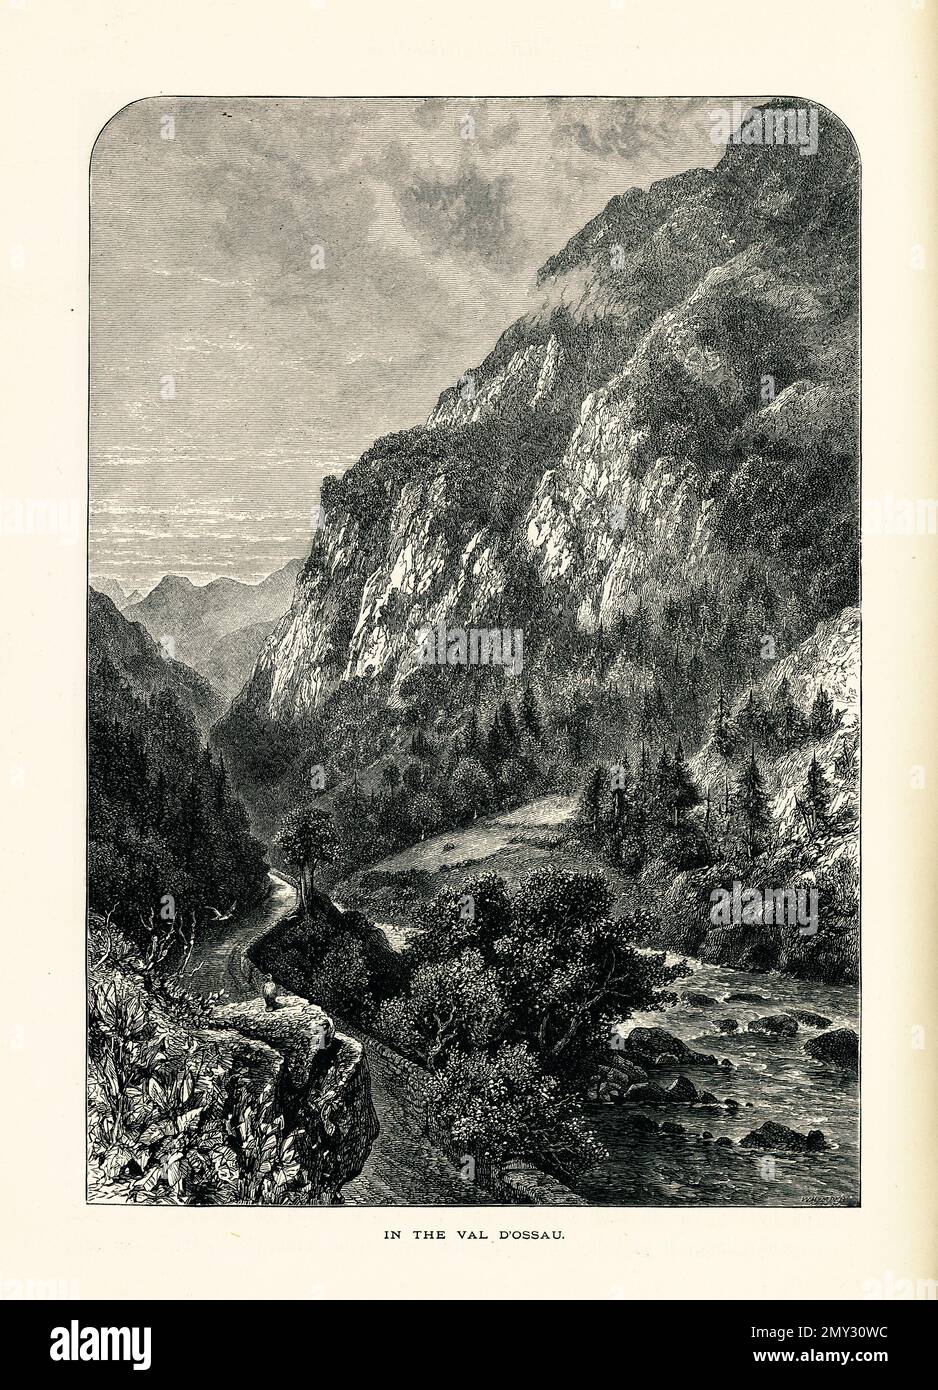 Vista antica della Val D'ossau, nei Pirenei, Francia. Incisione pubblicata in picturesque Europe, Vol. III (Cassell & Company, Limited: London, par Foto Stock